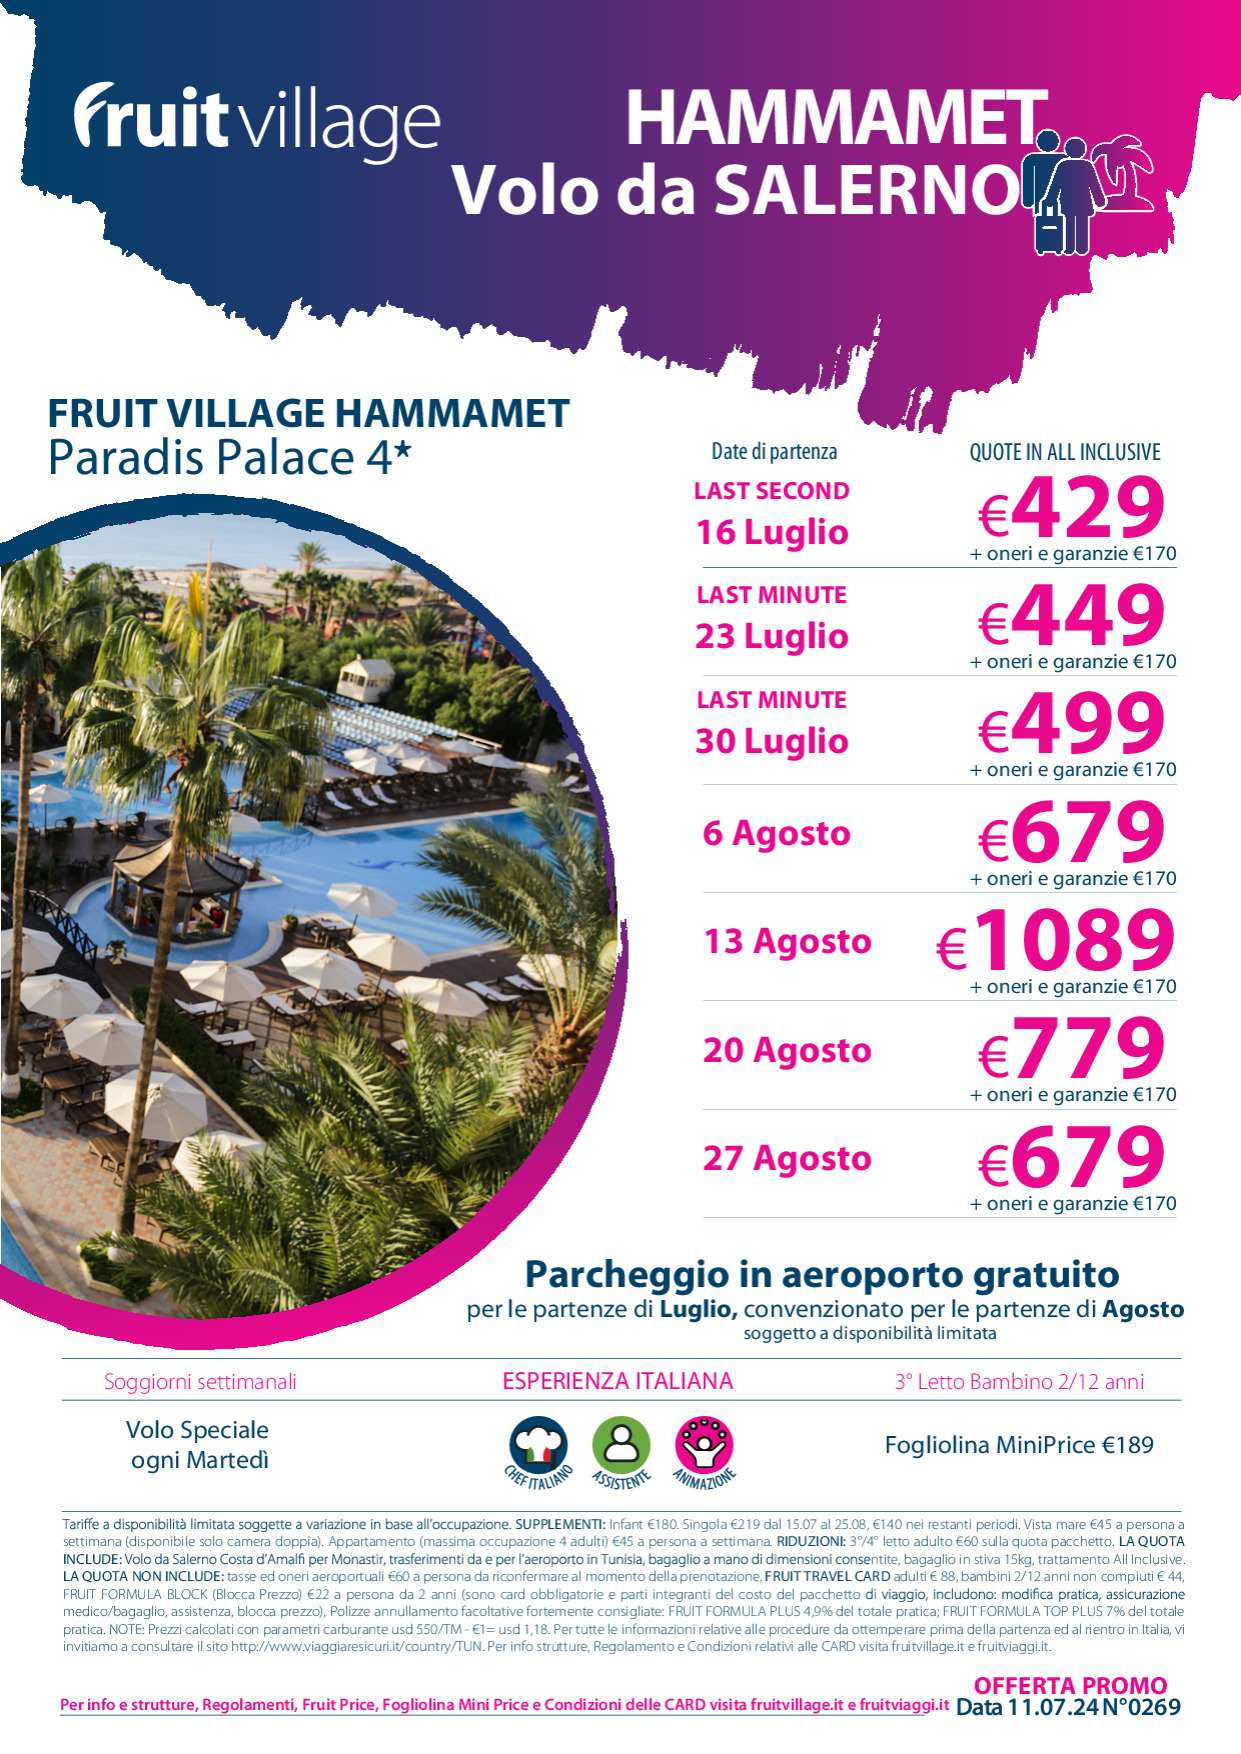 FRUIT VILLAGE Hammamet Paradis Palace 4* con volo speciale da Salerno